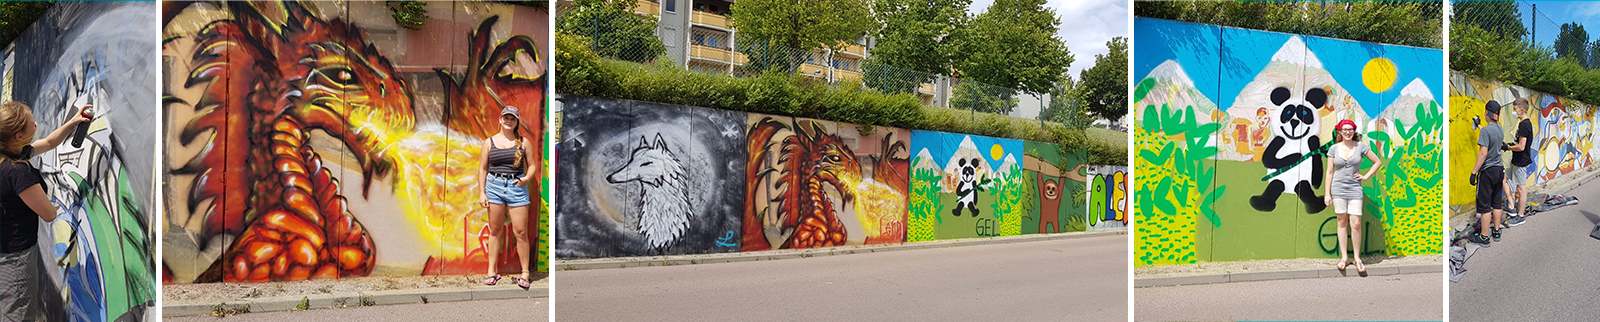 Graffiti Workshop "Gemeinsam.und.bunt" am ElbeCenter